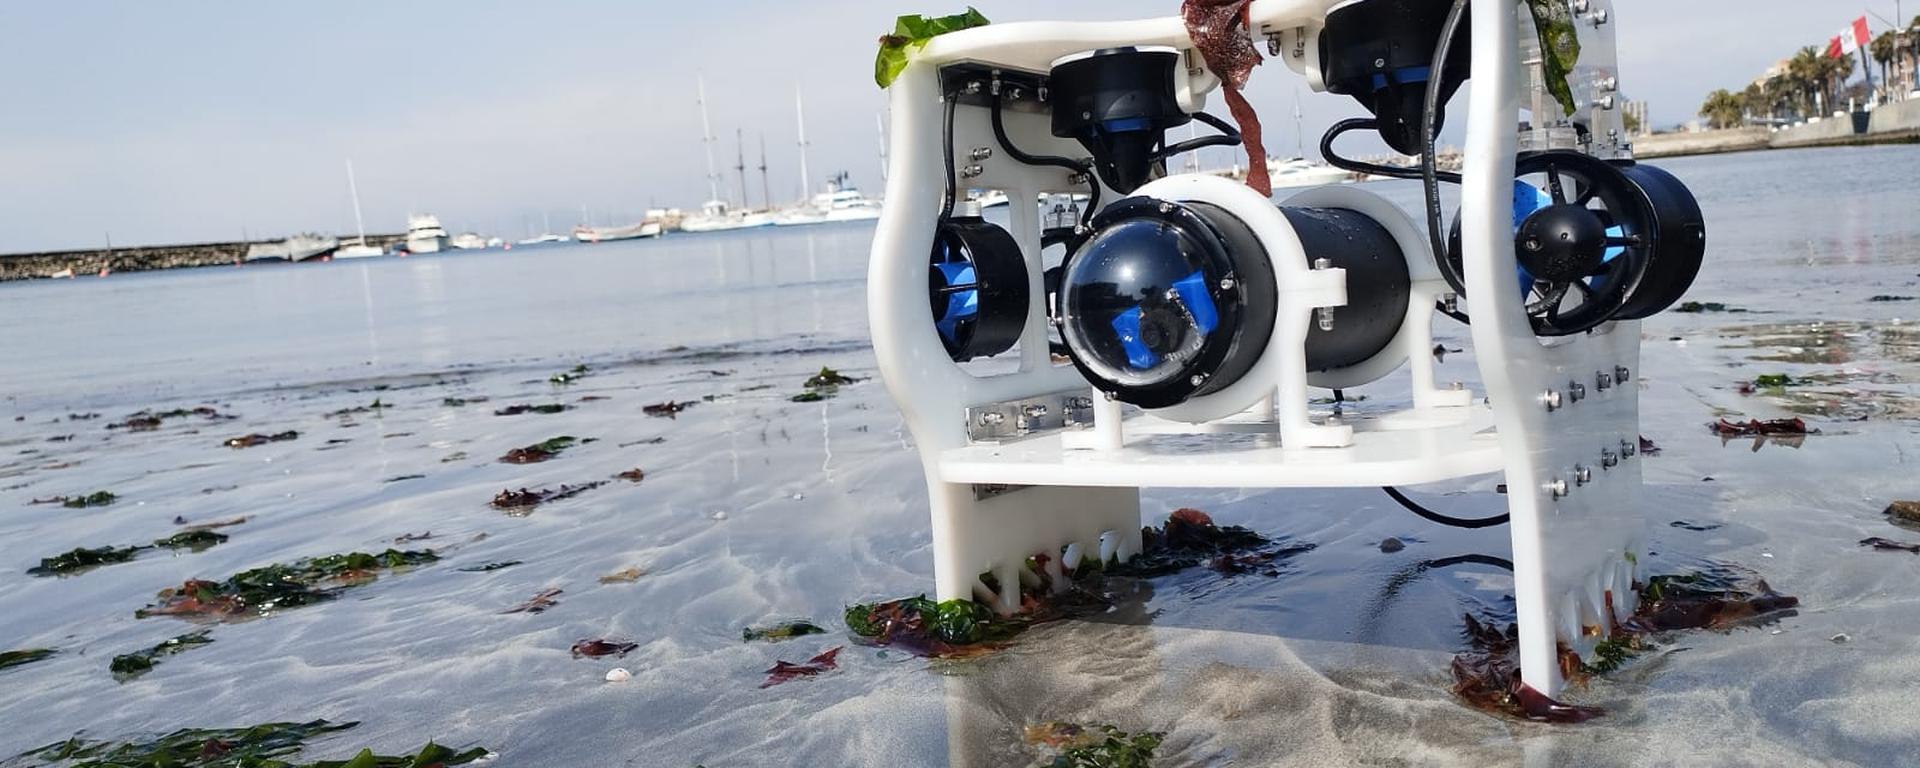 Bobelto, un robot submarino hecho por estudiantes para investigar el mar peruano | VIDEO